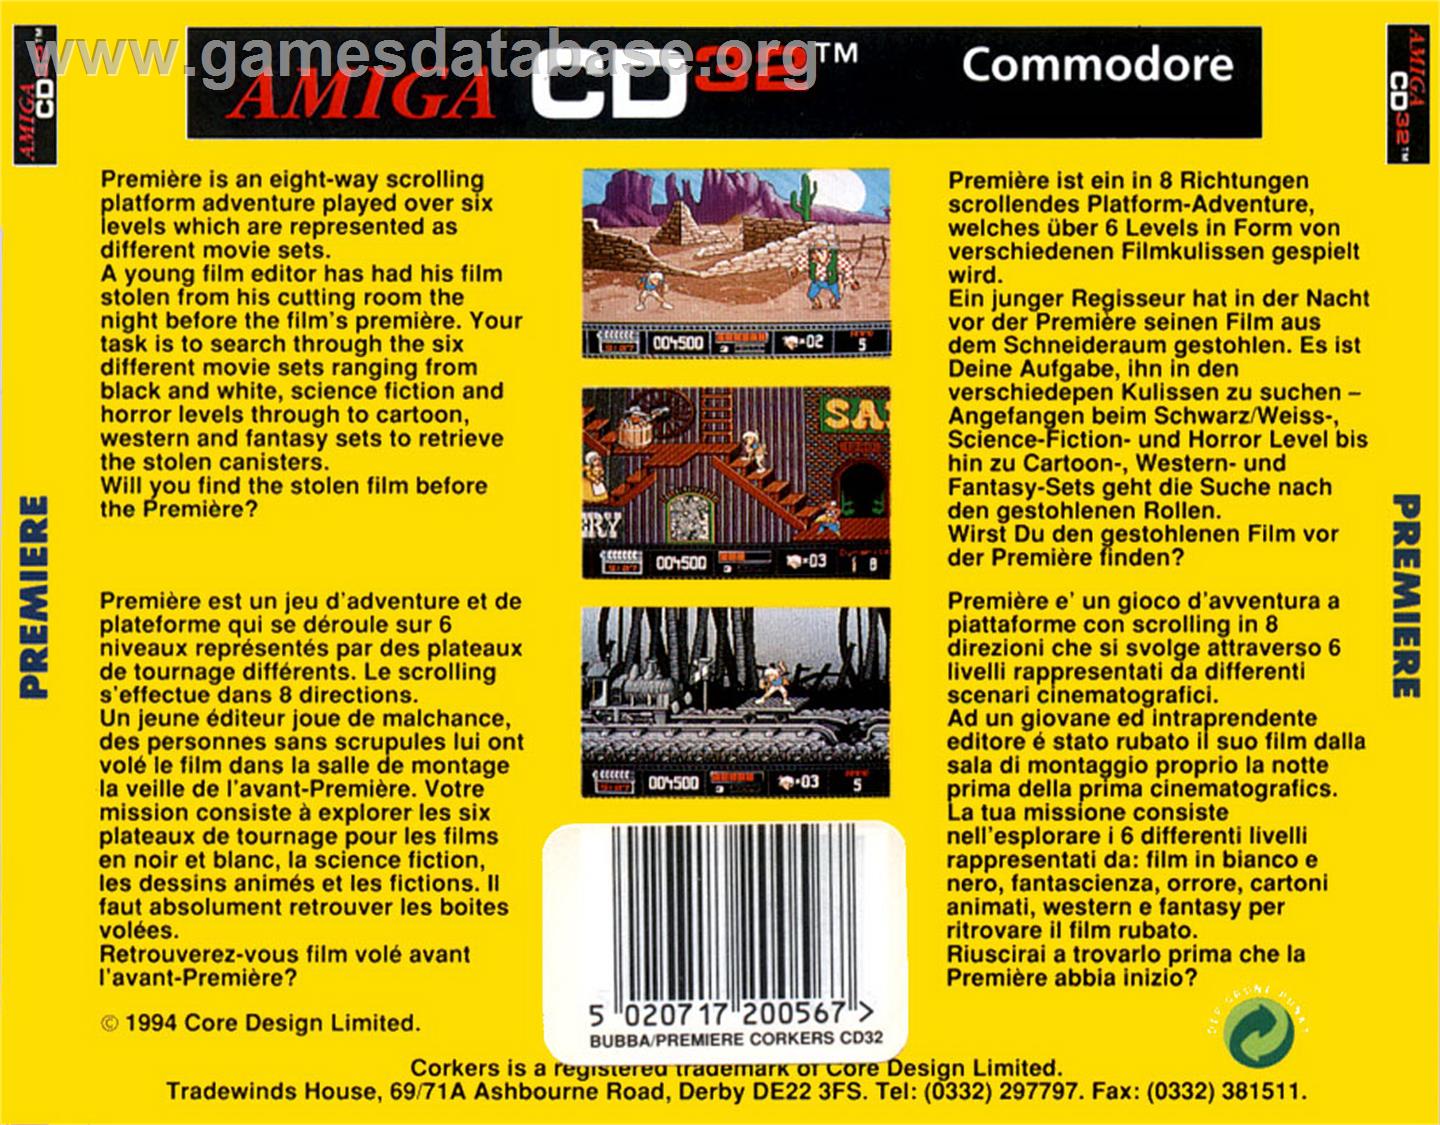 Premiere - Commodore Amiga CD32 - Artwork - Box Back